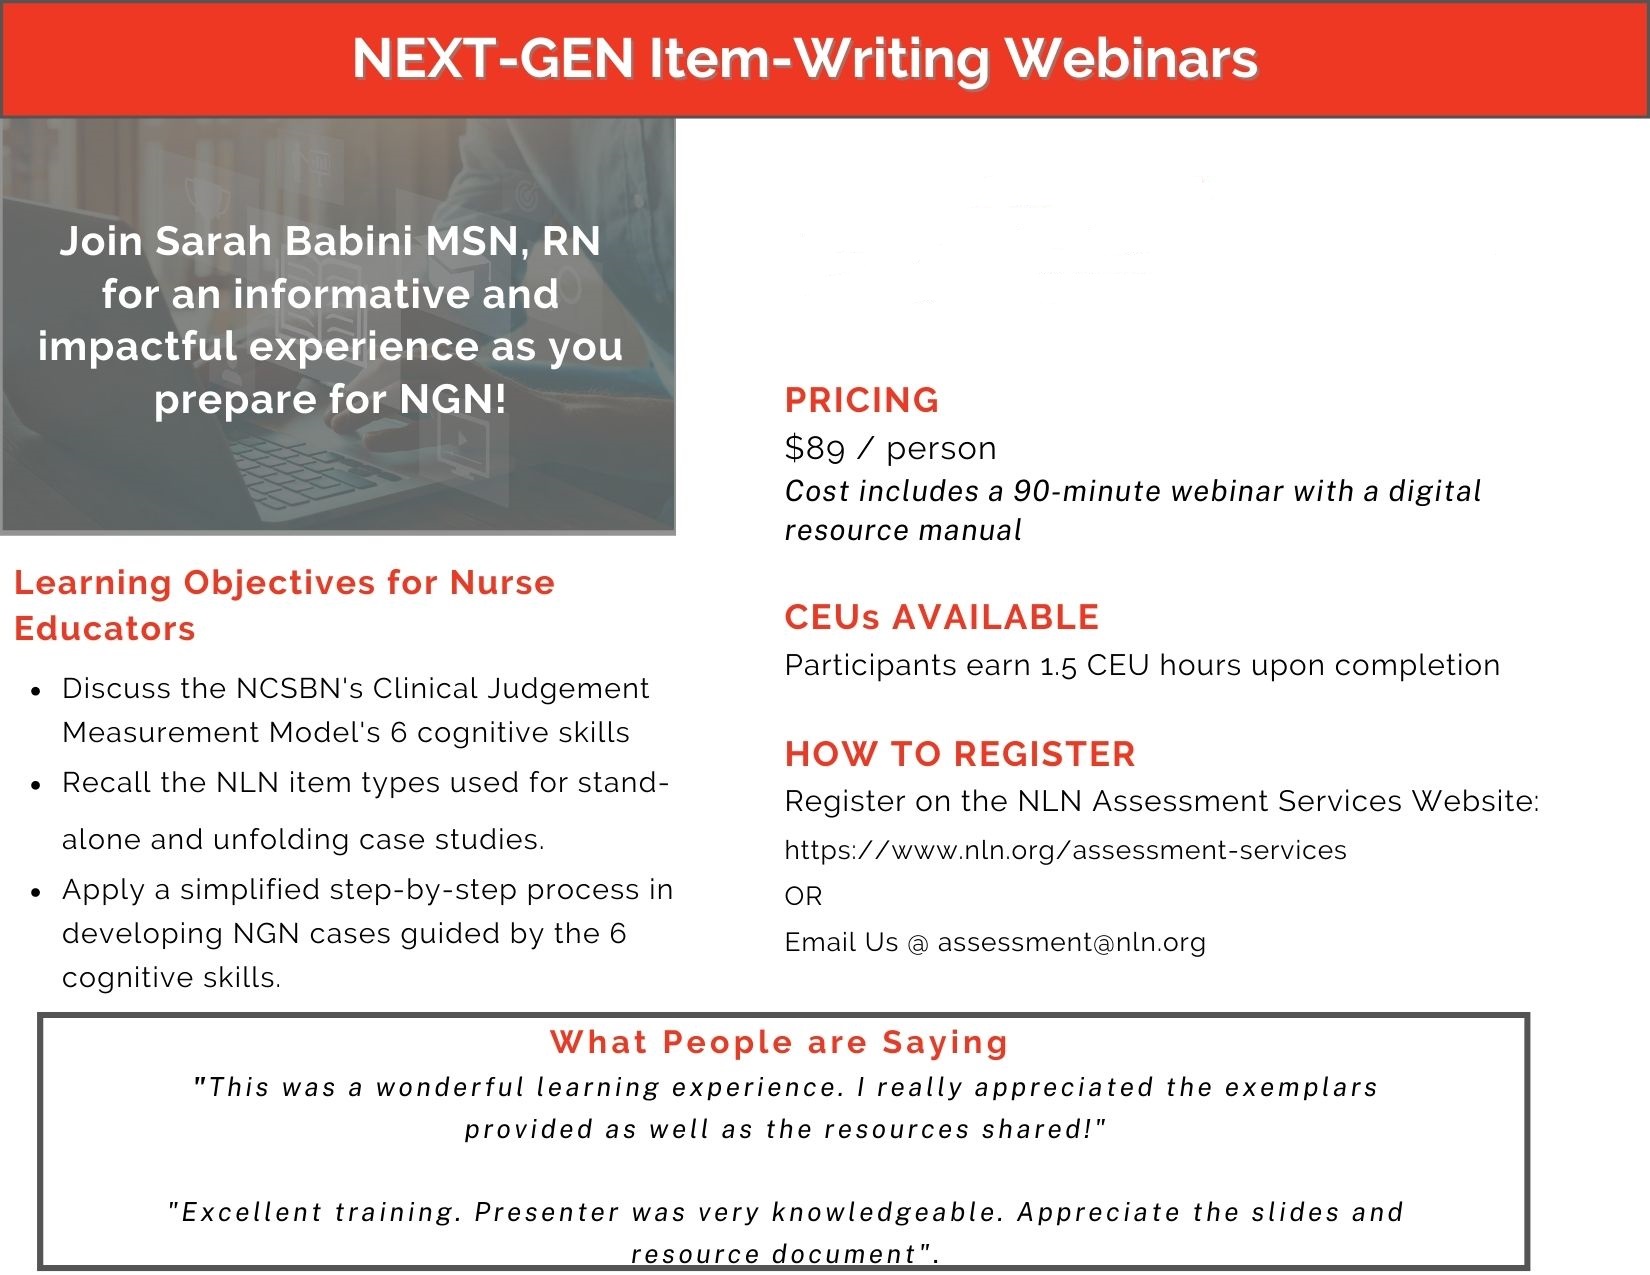 NGN Webinar Image